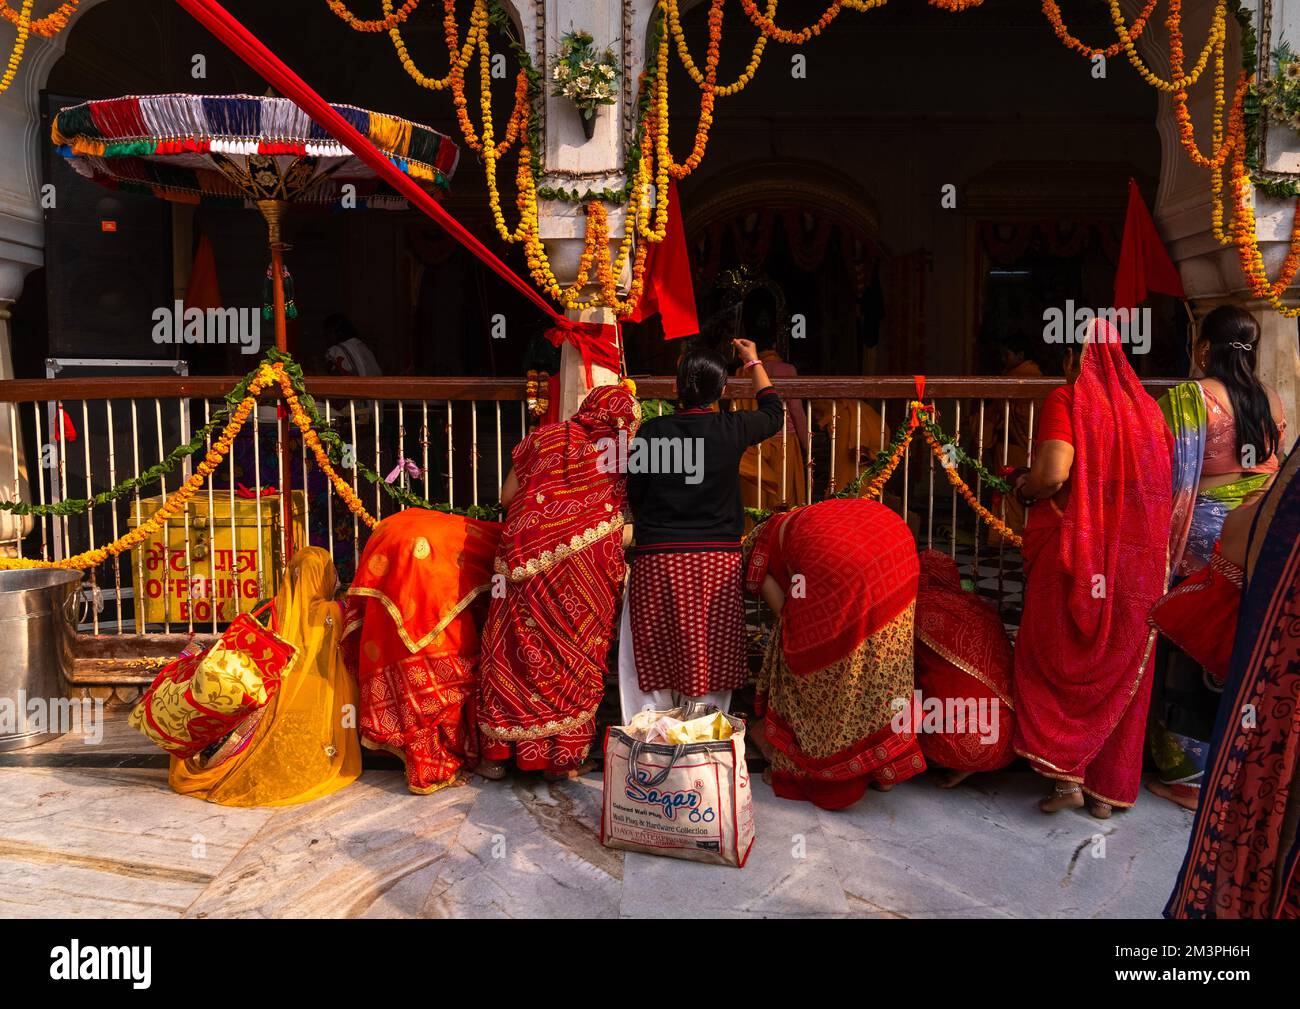 Rajasthani women praying in Galtaji temple, Rajasthan, Jaipur, India Stock Photo